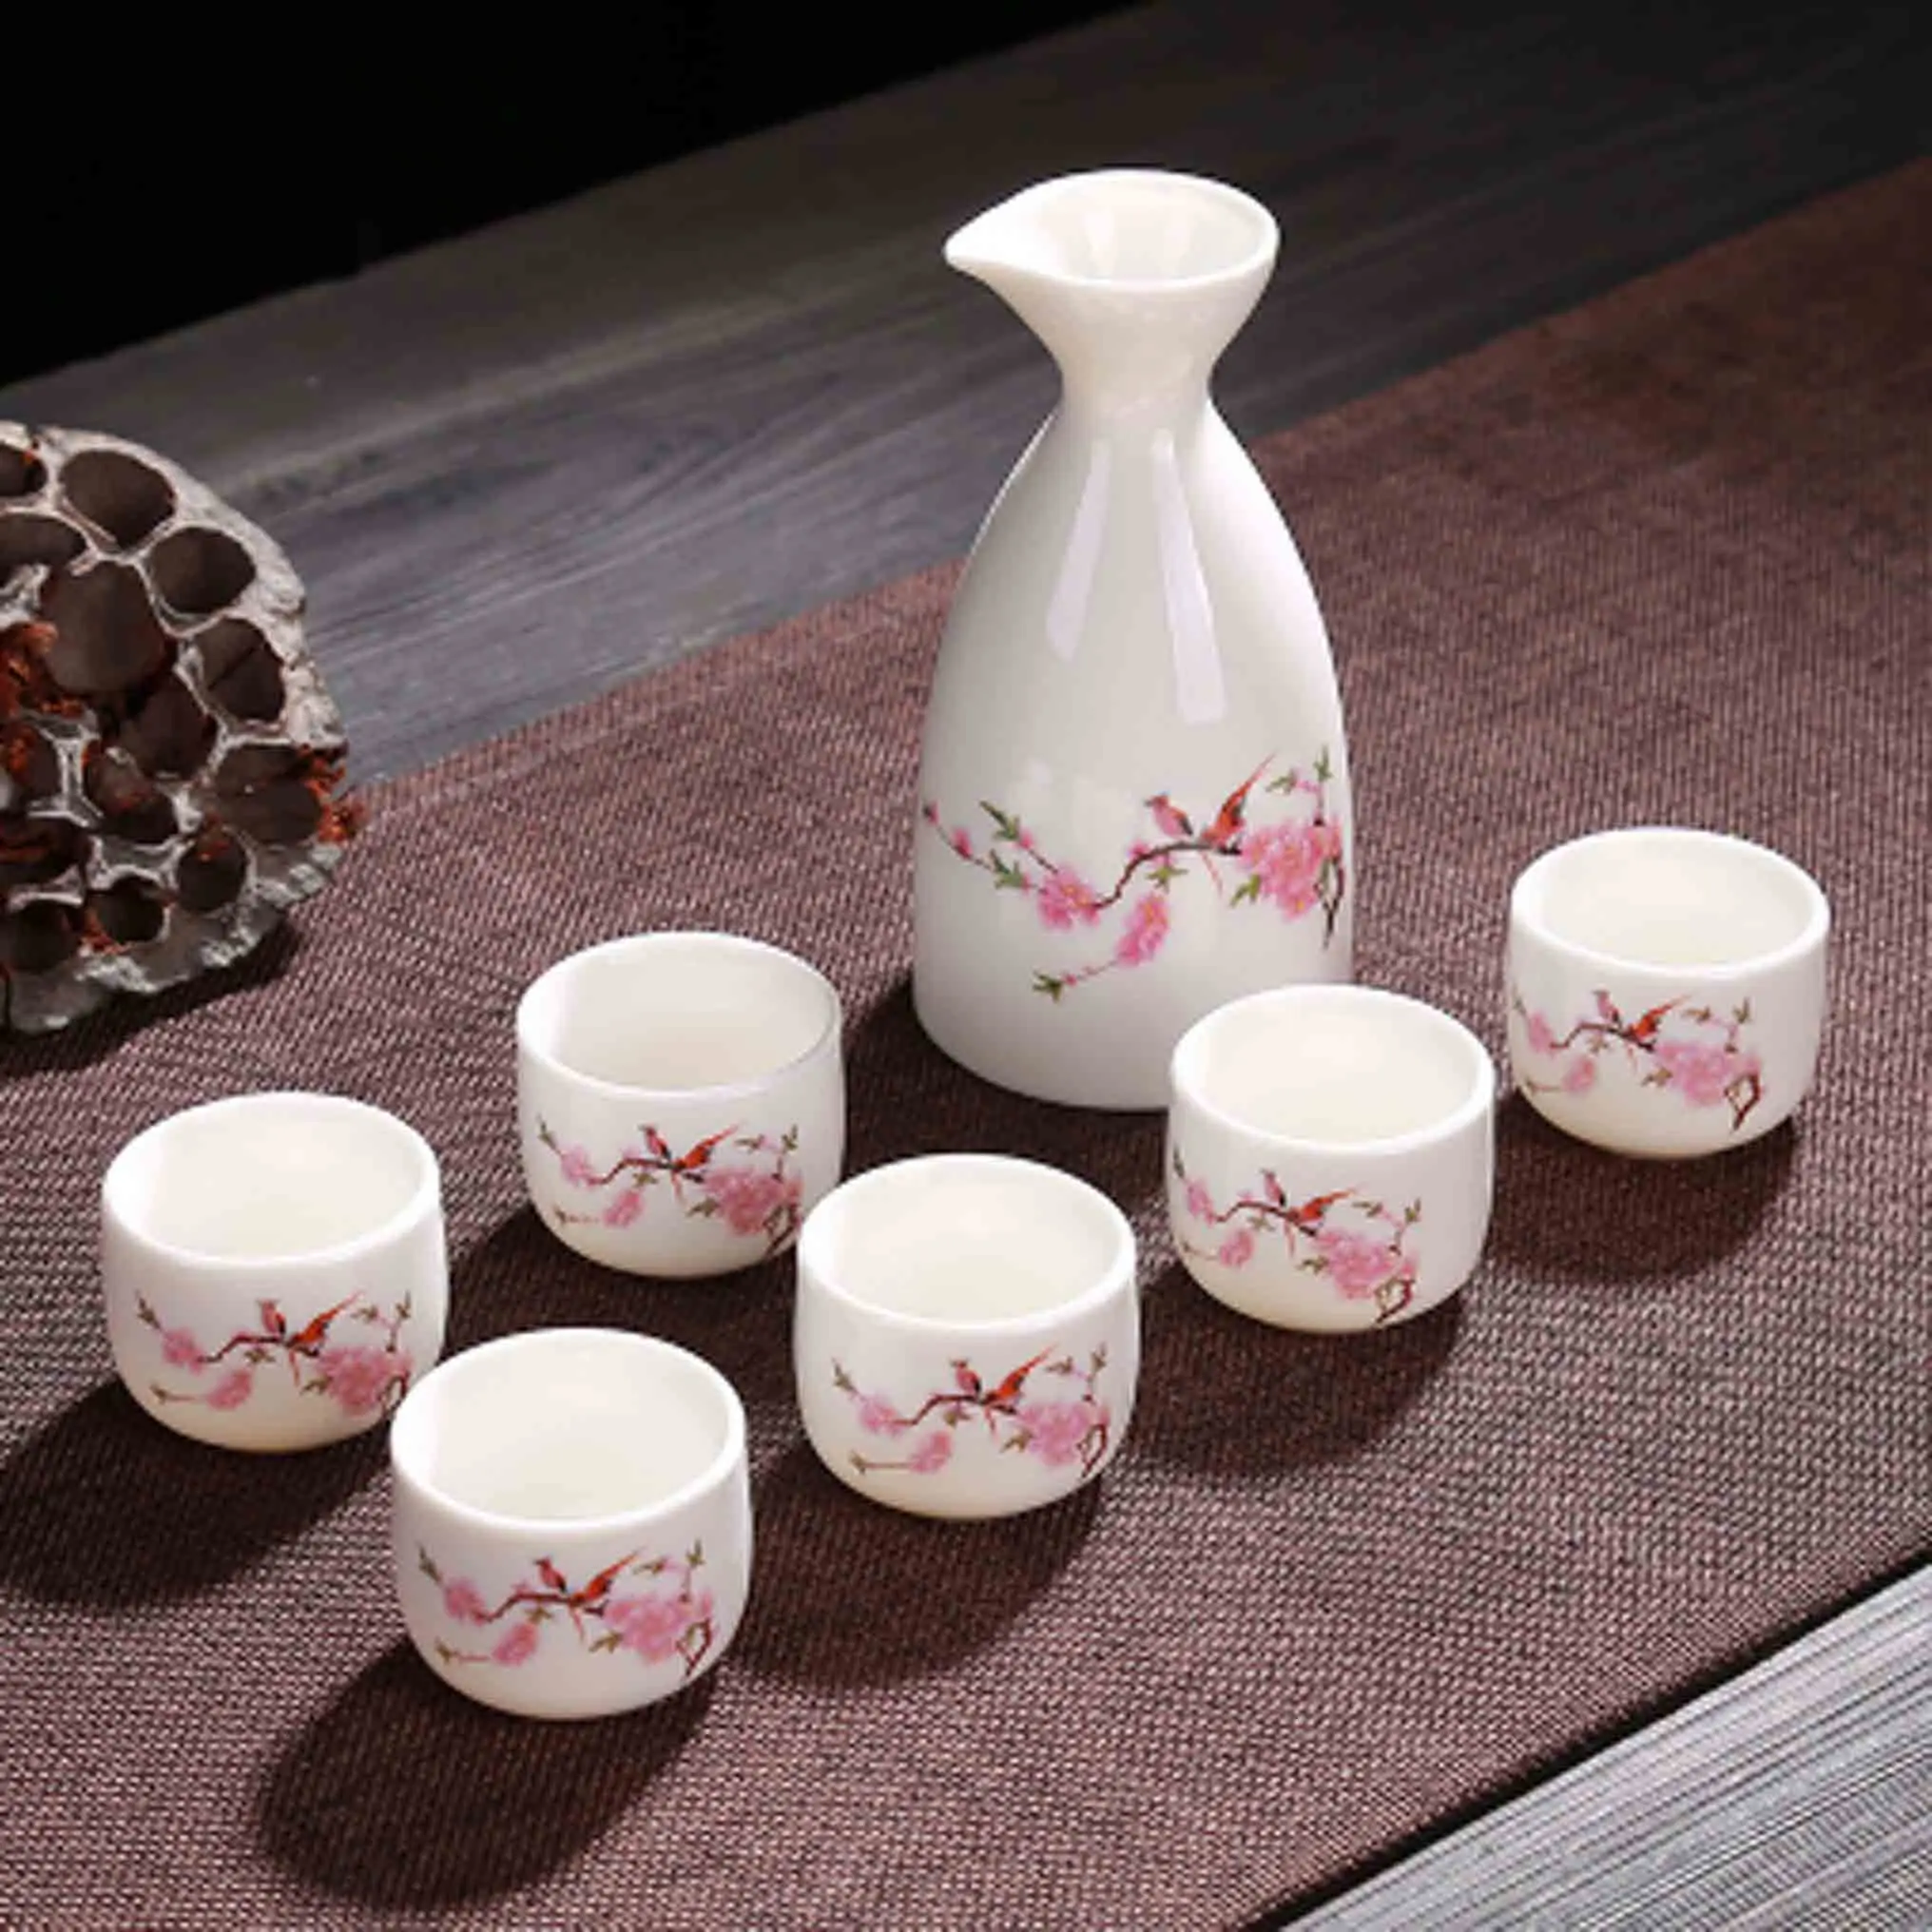 7 шт., винтажный керамический горшок, чашки, набор, японский стиль, фляги для бедер, для дома, кухни, офиса, кувшин, чашка для ликера, посуда для напитков, креативные подарки - Цвет: Style 3